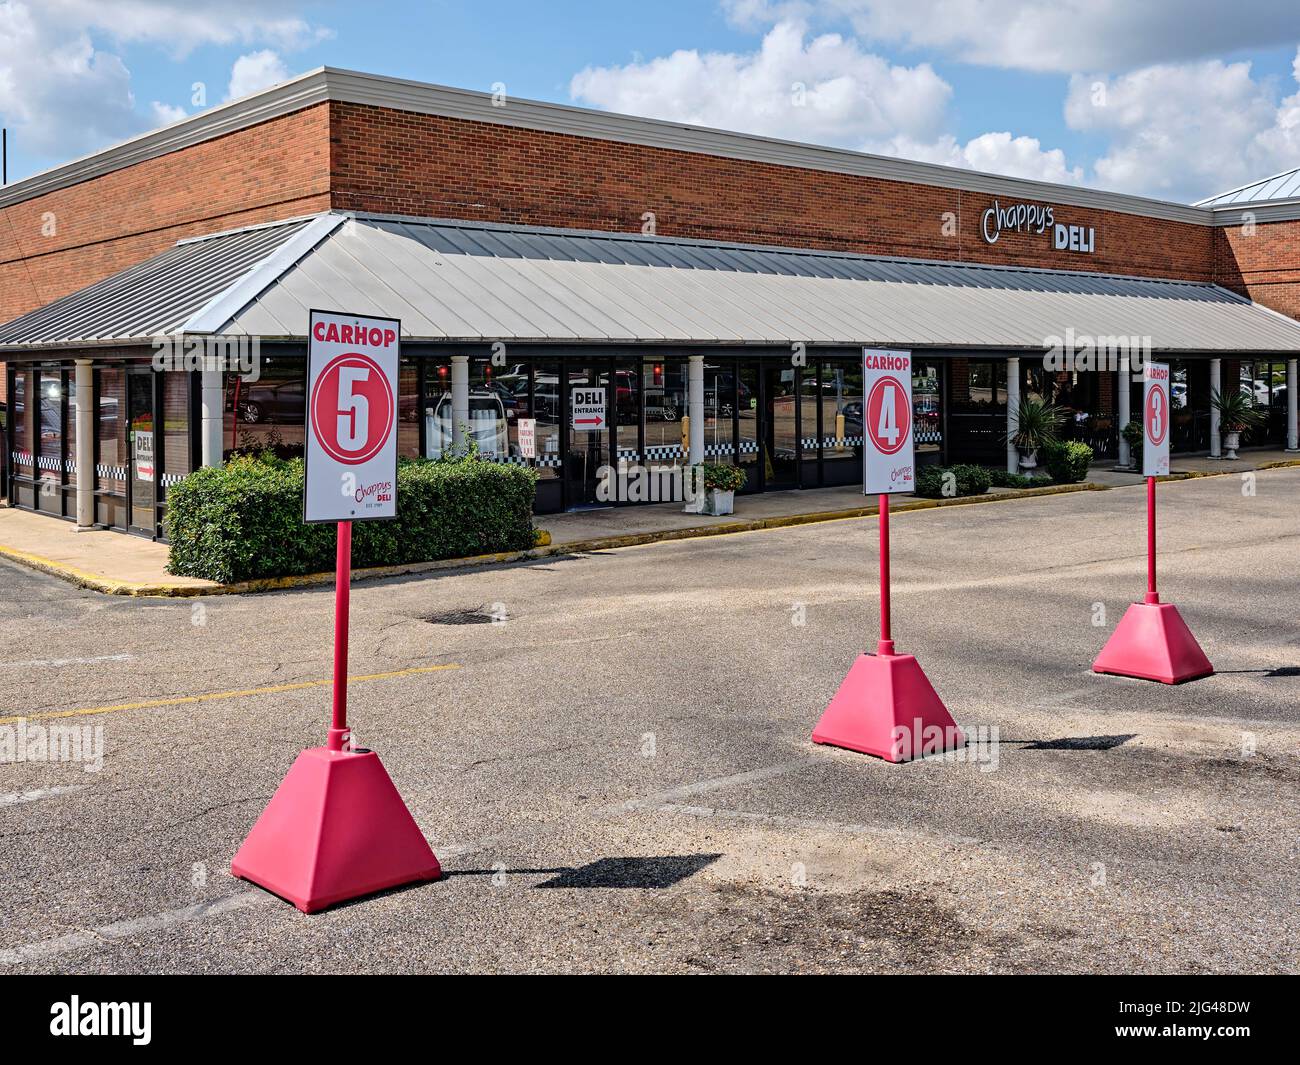 Restaurant drive up parking à emporter appelé carhop ou car hop au Chappy's Deli à Montgomery Alabama, États-Unis. Banque D'Images